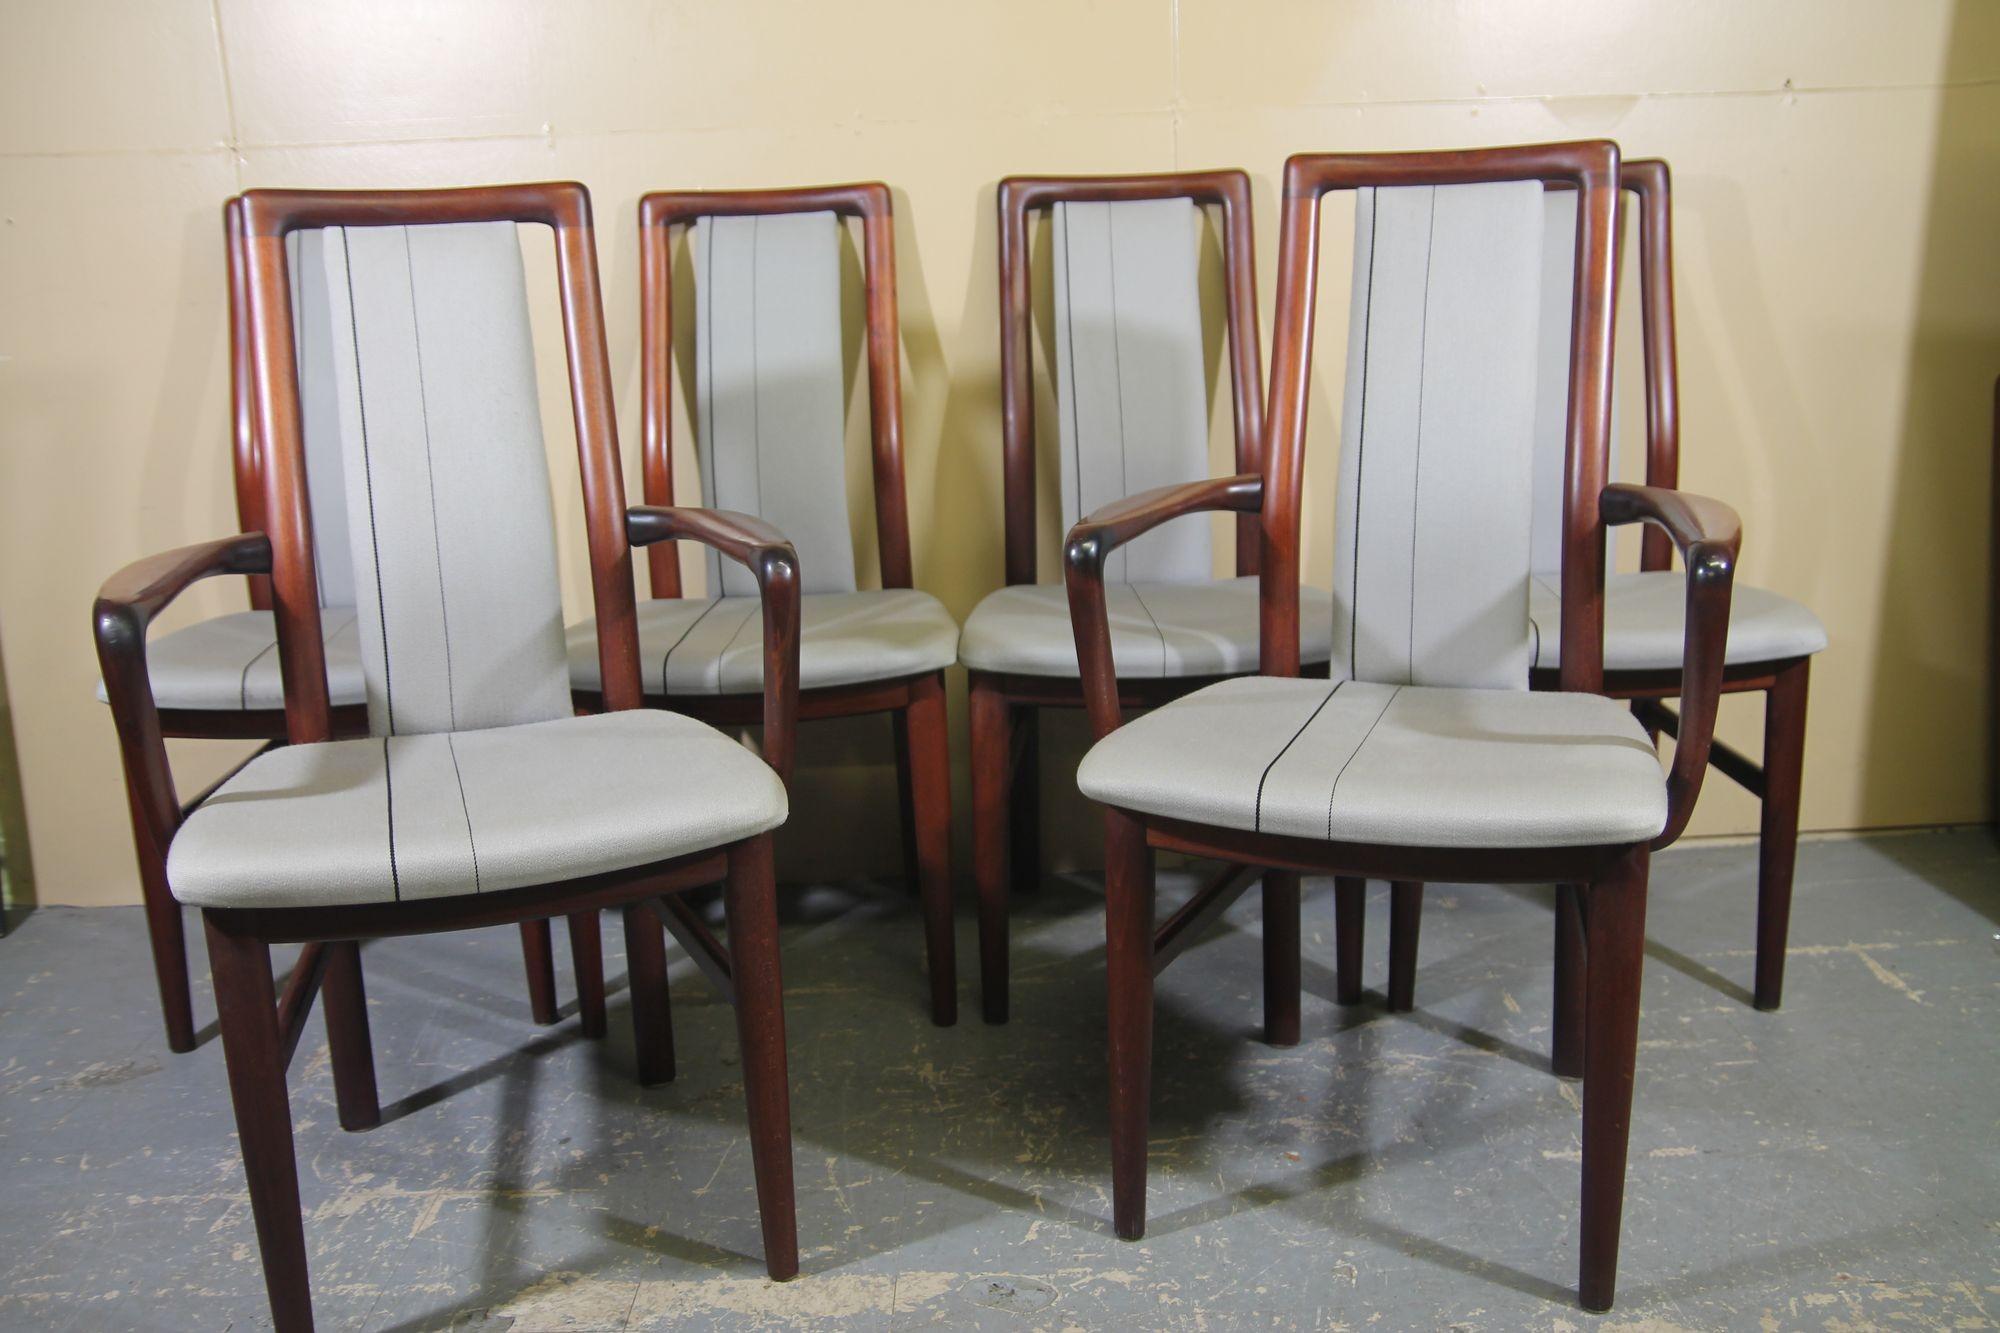 Nous avons le plaisir de vous proposer ce superbe ensemble de 6 chaises de salle à manger en bois de rose de SVA Mobler. Cet ensemble est composé de 2 fauteuils et de 4 chaises sans accoudoirs. Les chaises à accoudoirs mesurent 22 x 18 x 37,5, les